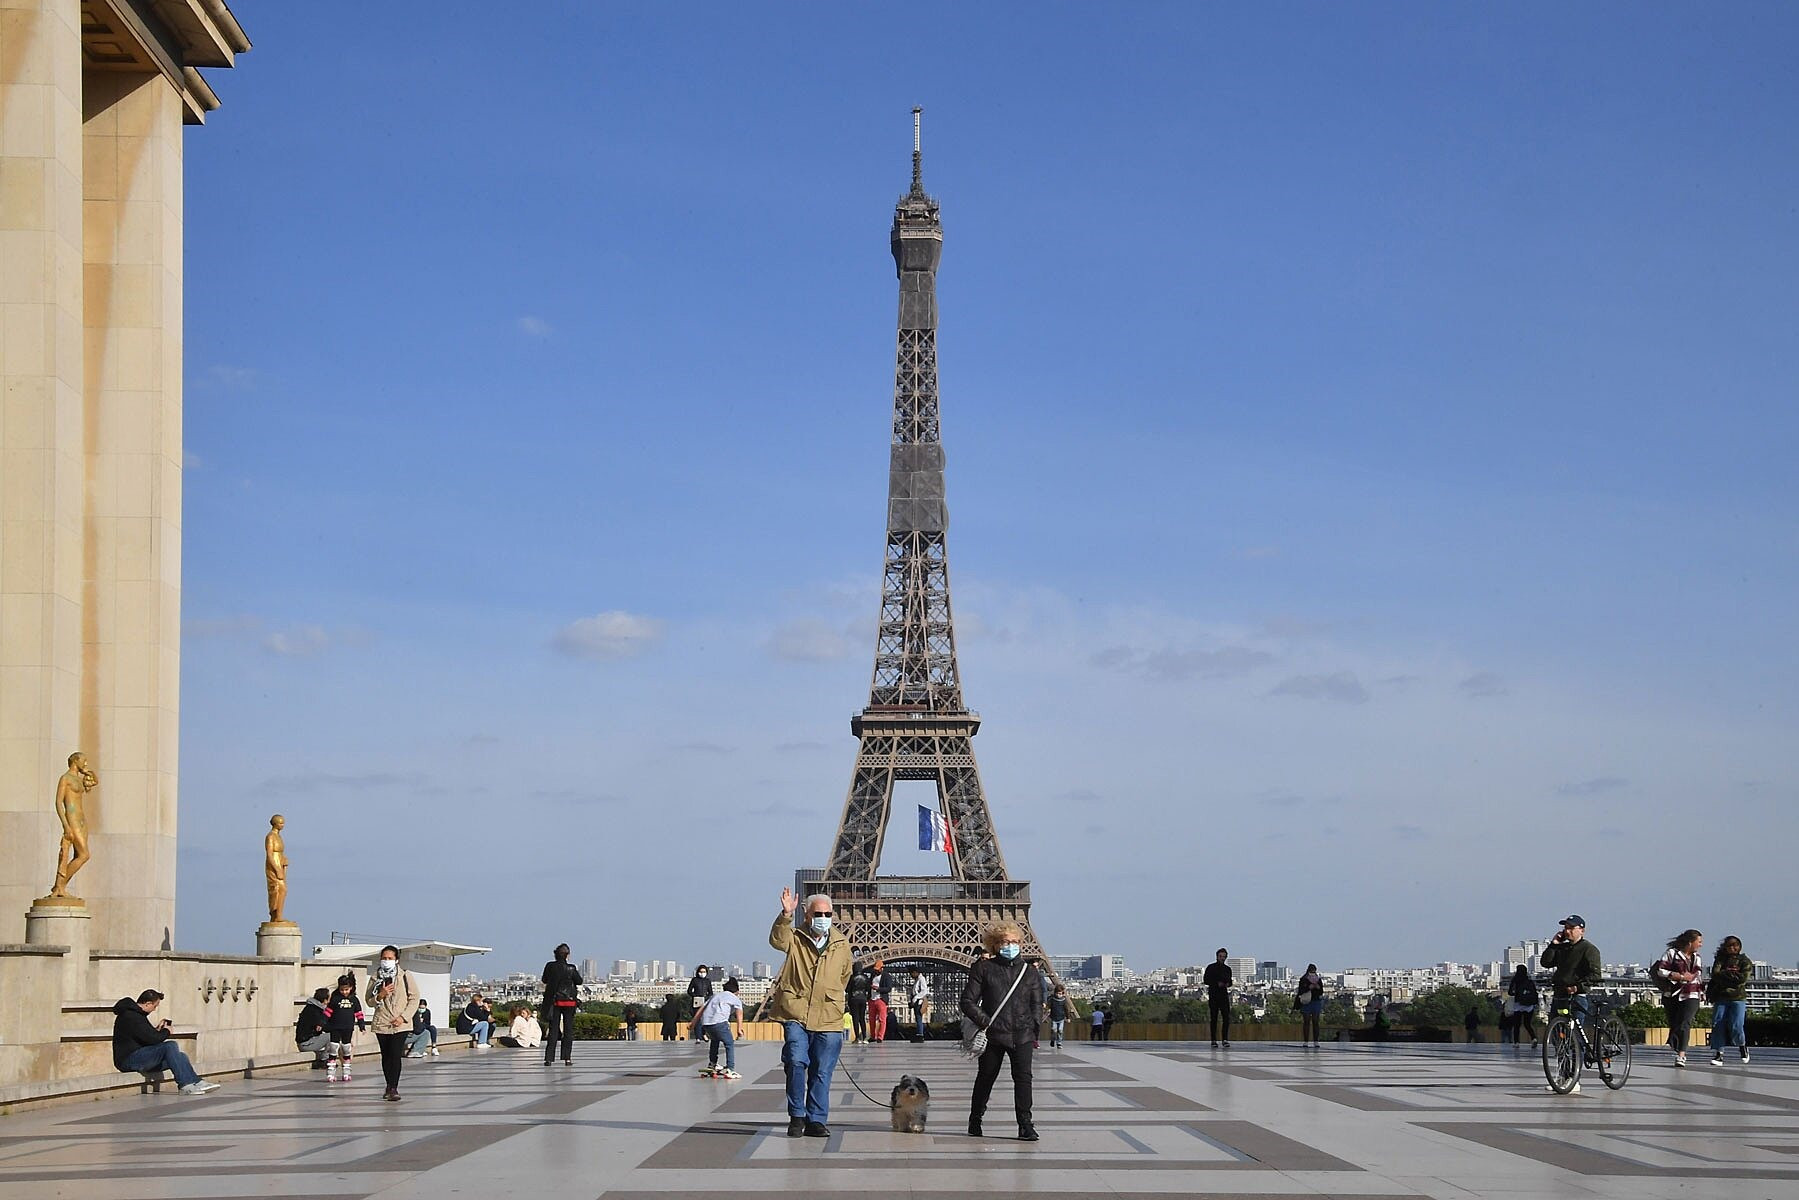 Paris (Pháp), điểm thu hút khách du lịch quốc tế hàng đầu thế giới vẫn trầm lắng sau khi được mở cửa trở lại vào mùa hè vừa qua. Ảnh: Gettyimage